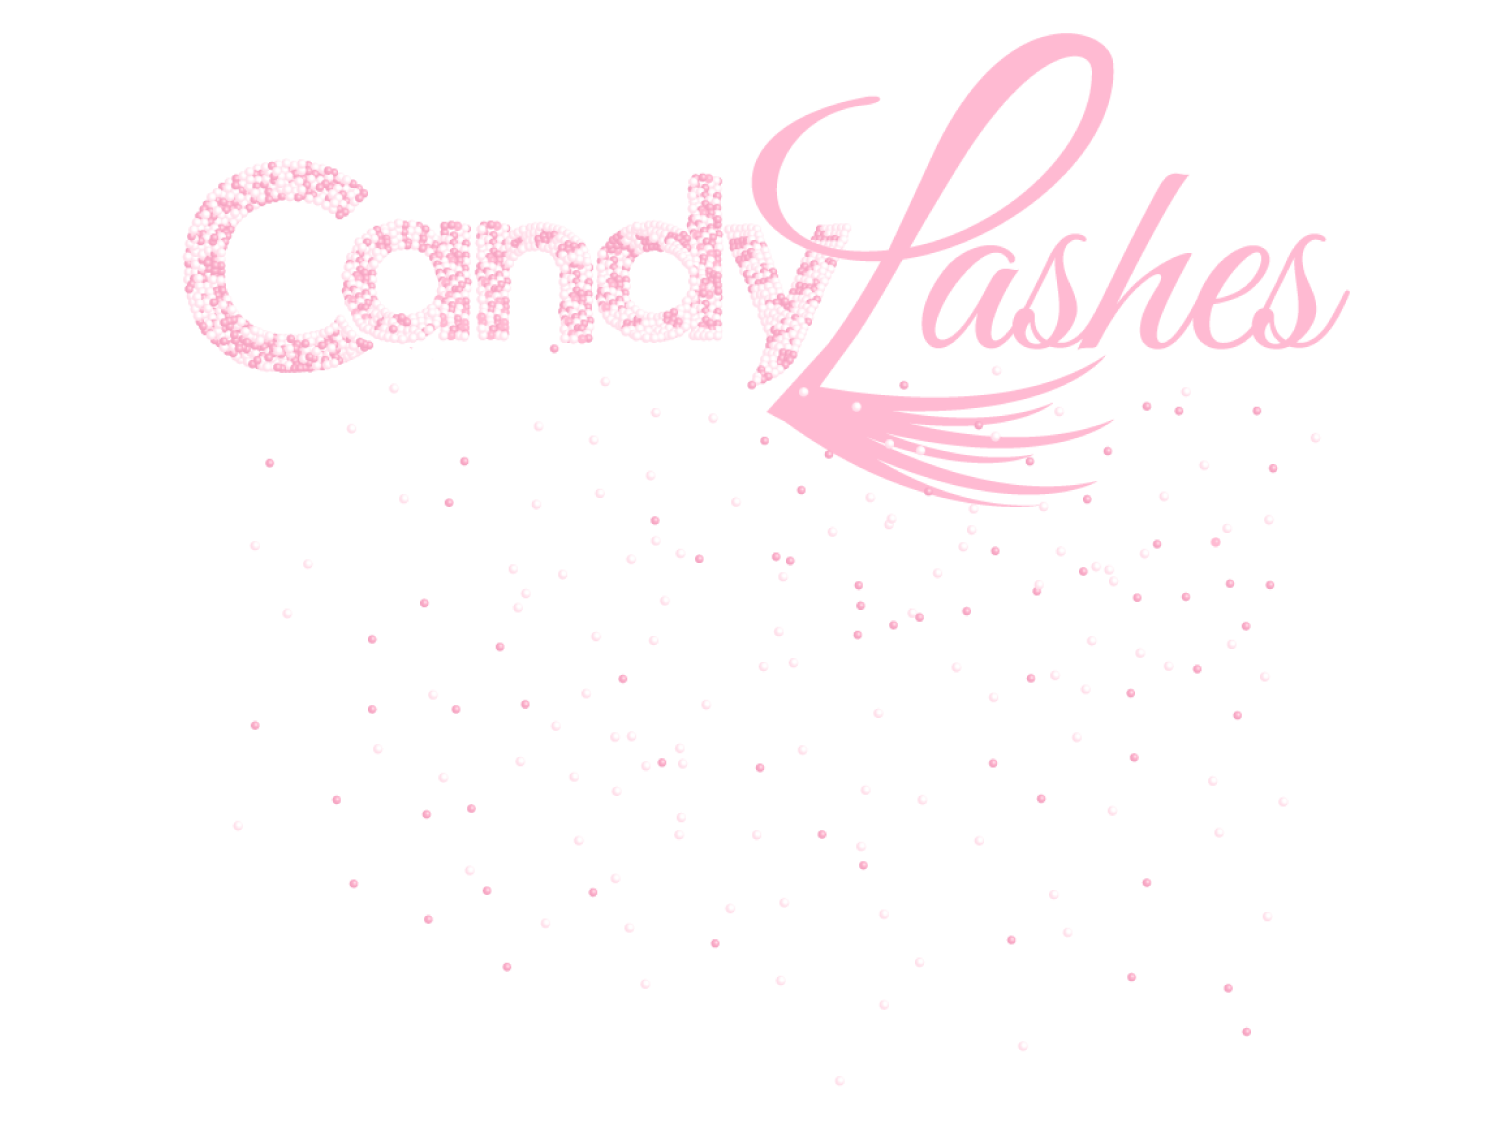 Candylashes